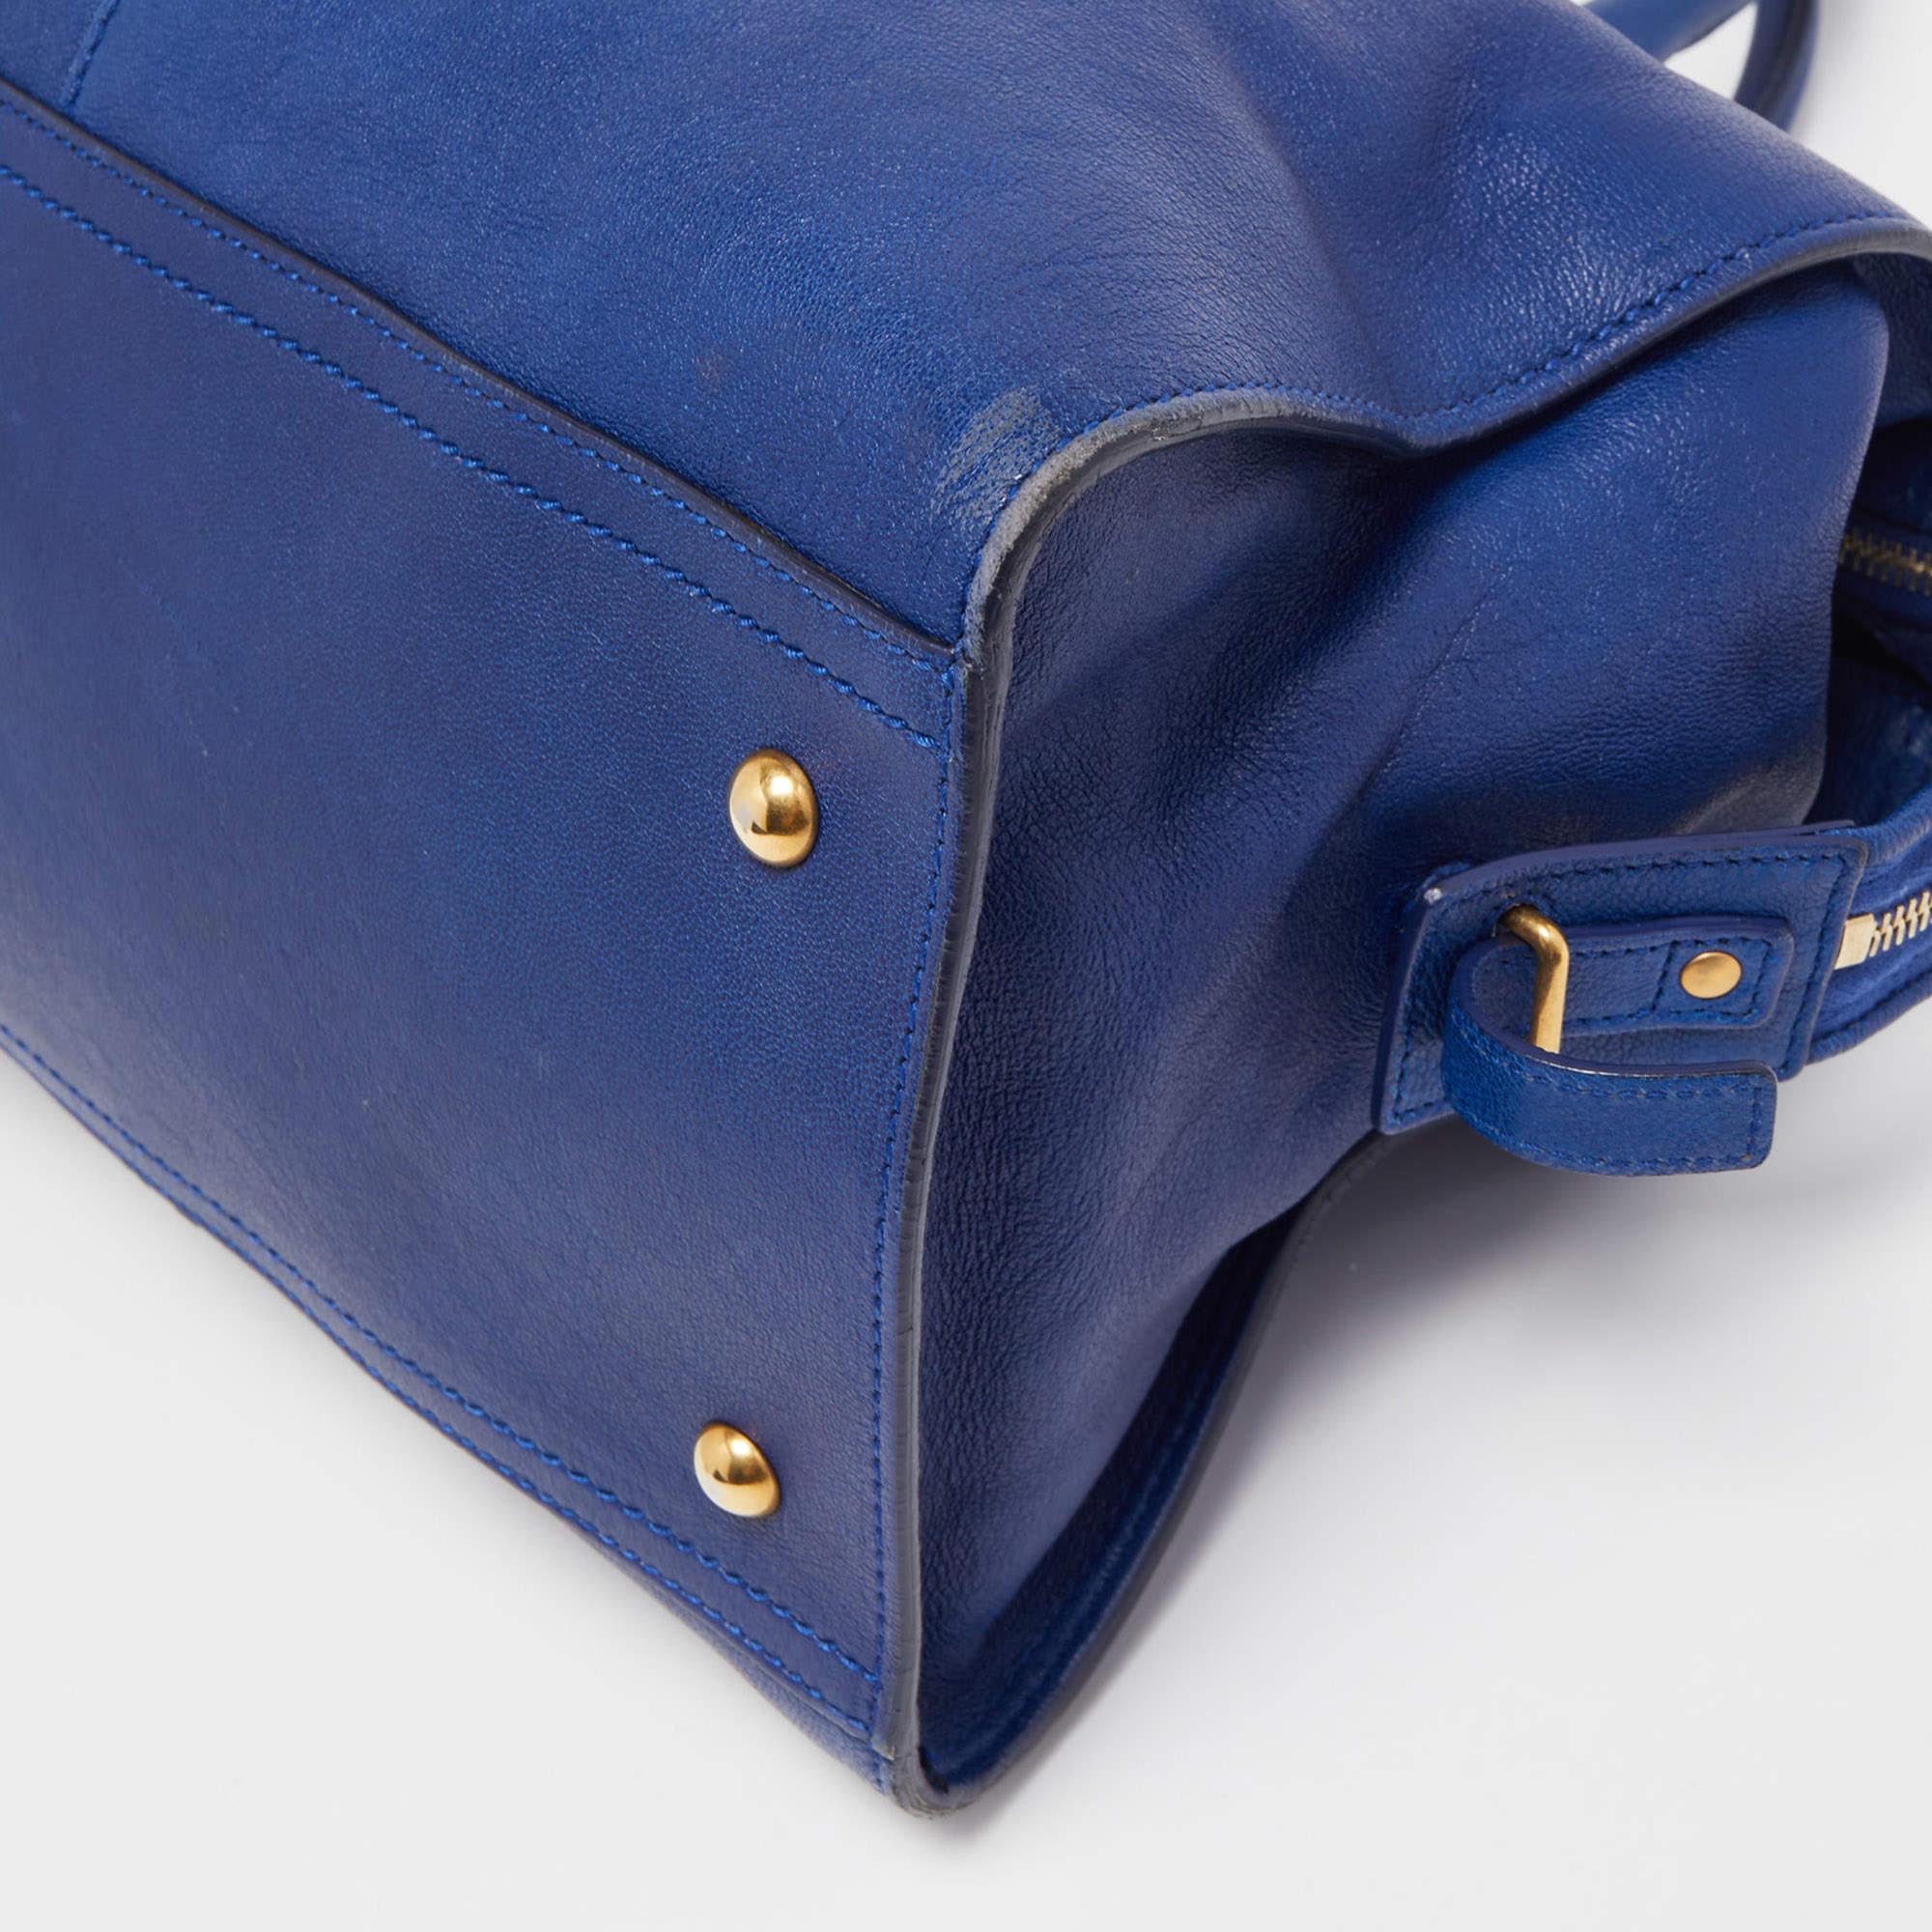 Yves Saint Laurent Blue Leather Medium Cabas Chyc Tote In Good Condition In Dubai, Al Qouz 2